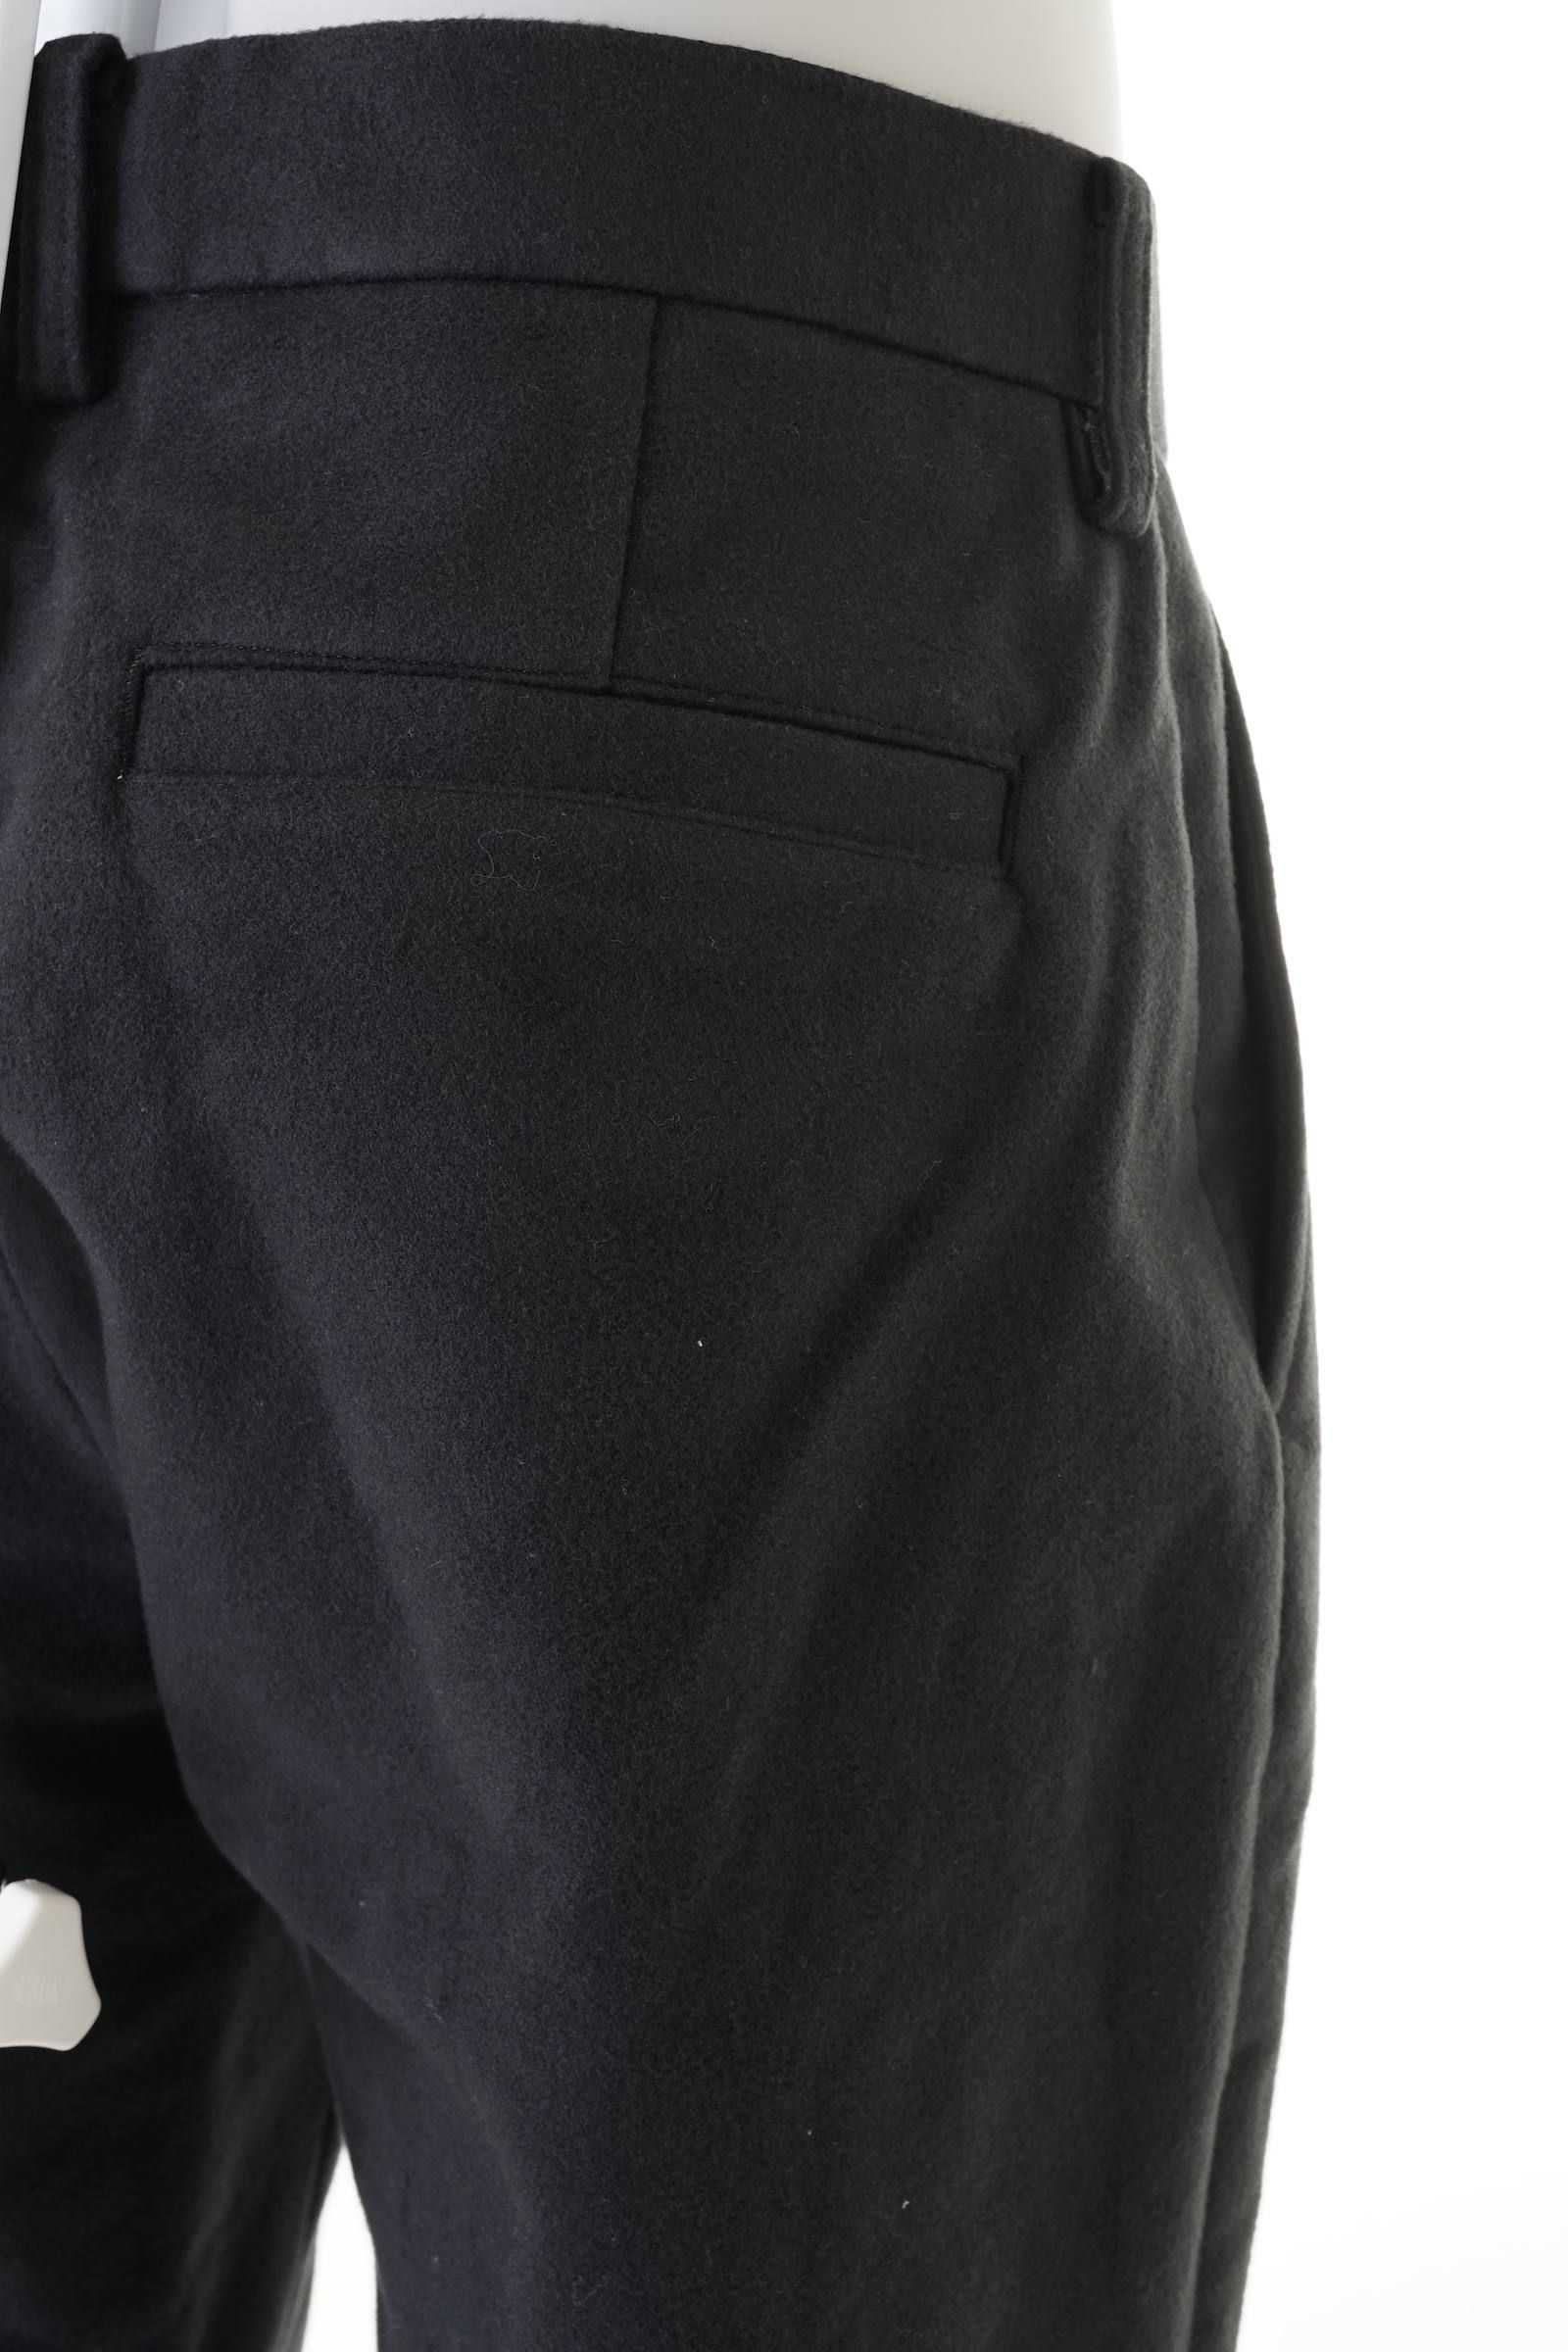 国産再入荷KISHIDAMIKI：Eco leather tuck trousers /黒 パンツ